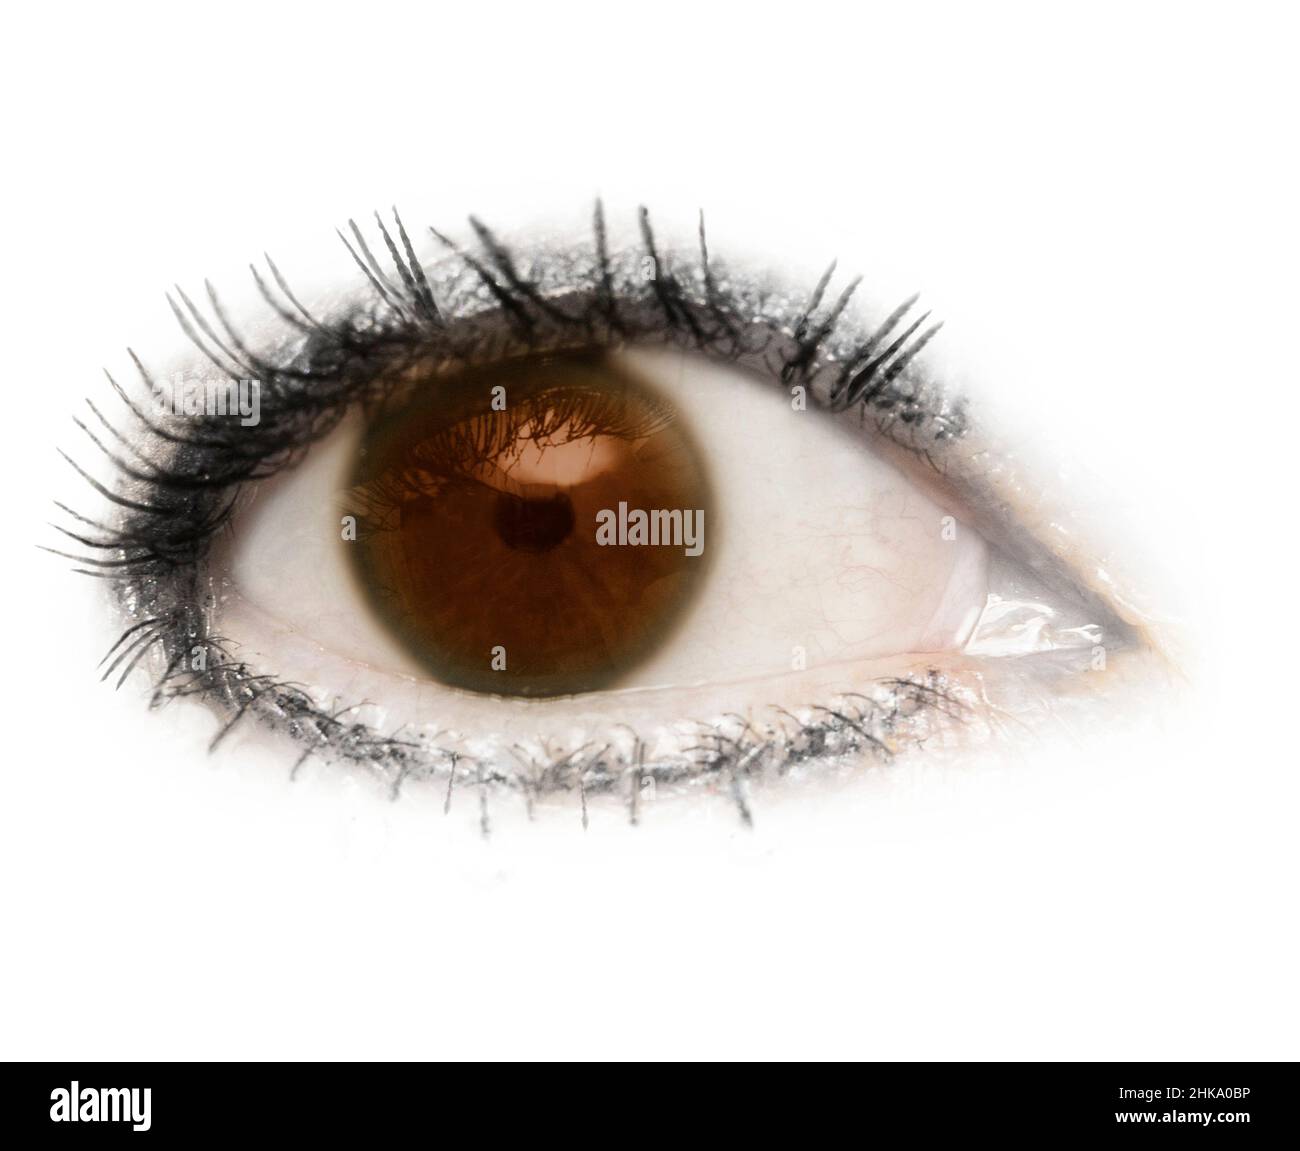 Un œil, un globe oculaire, des yeux bruns, bruns, isolés avec des cils sur un fond blanc.Paupière,pupille,sclère,iris. Banque D'Images